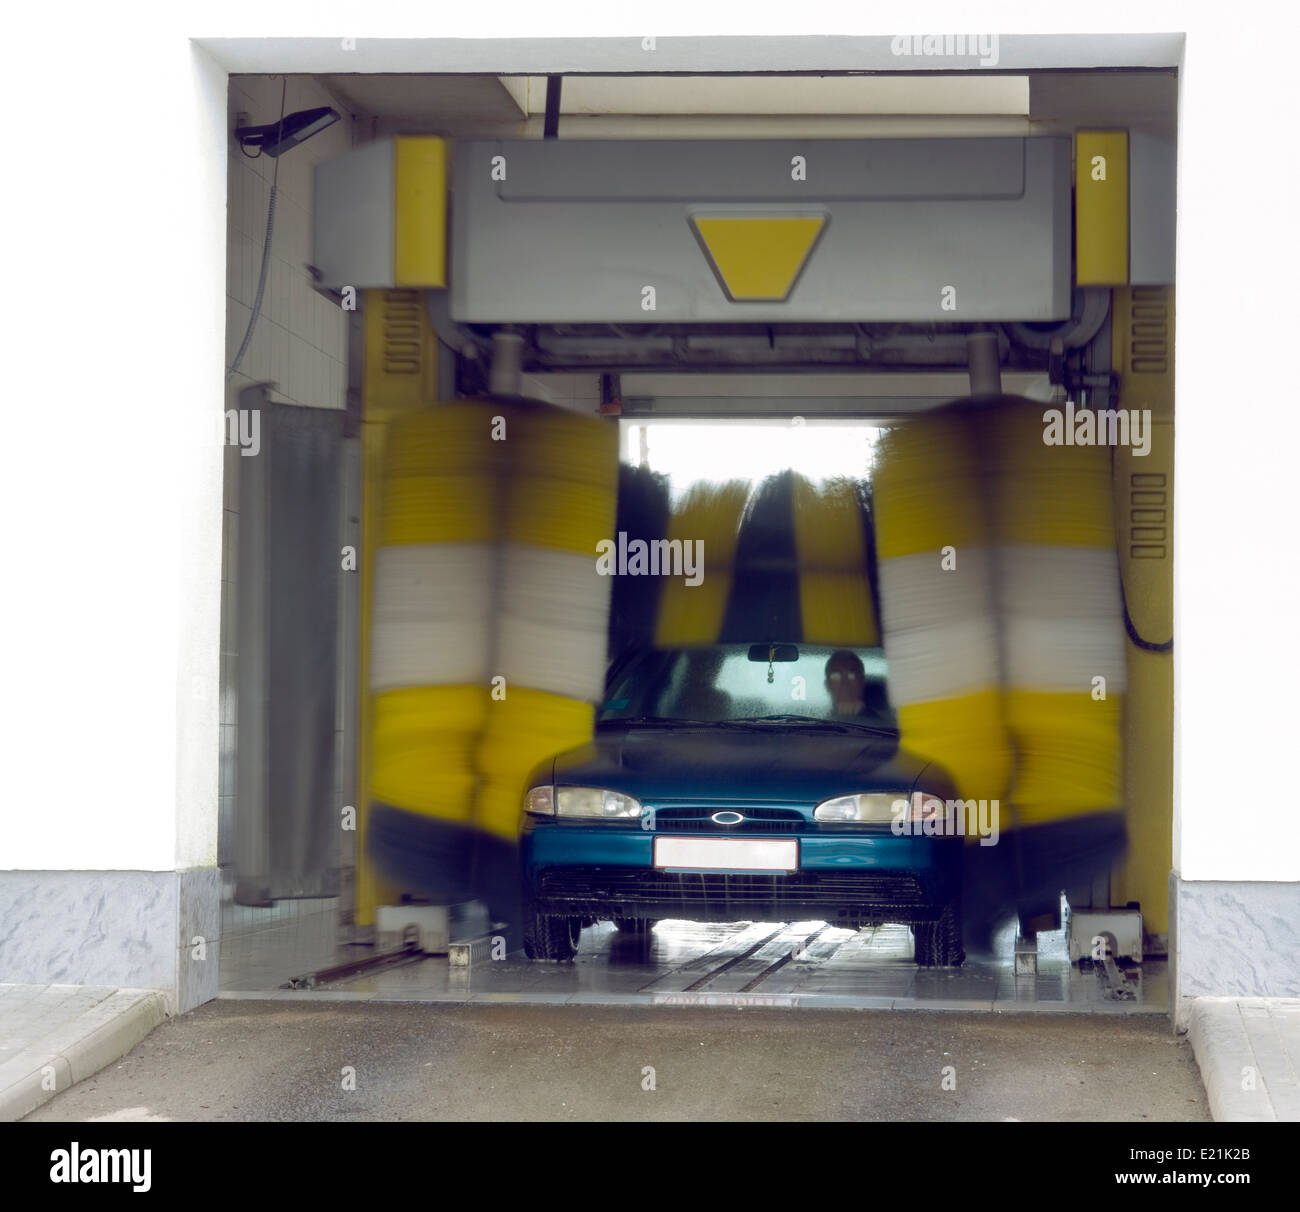 Lavage de voiture automatique - très rapide et un service pratique Banque D'Images